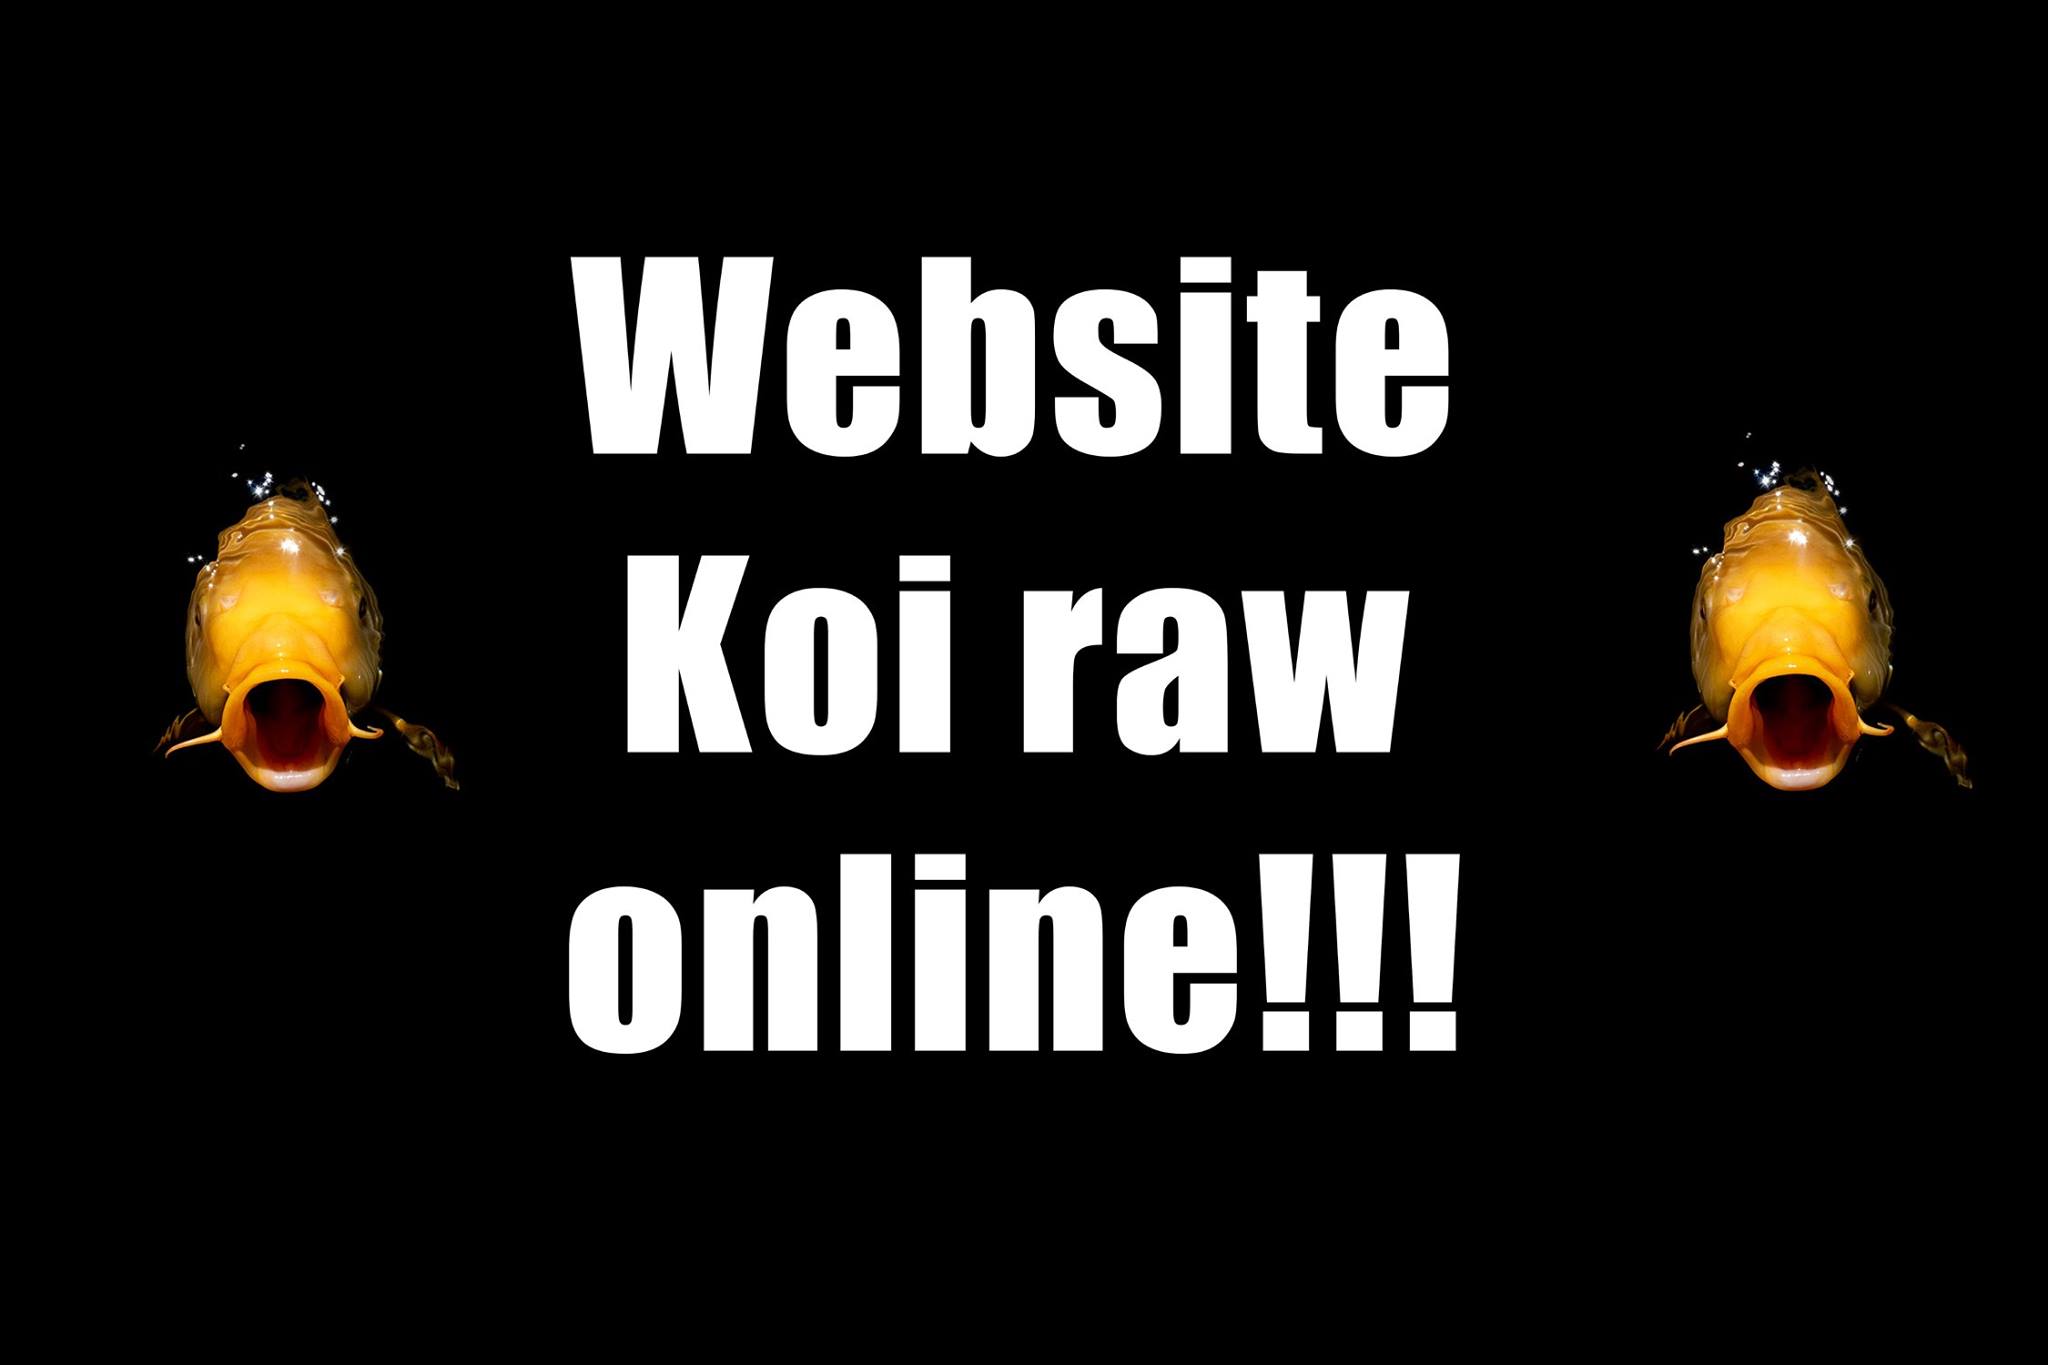 koiraw-website online-groot